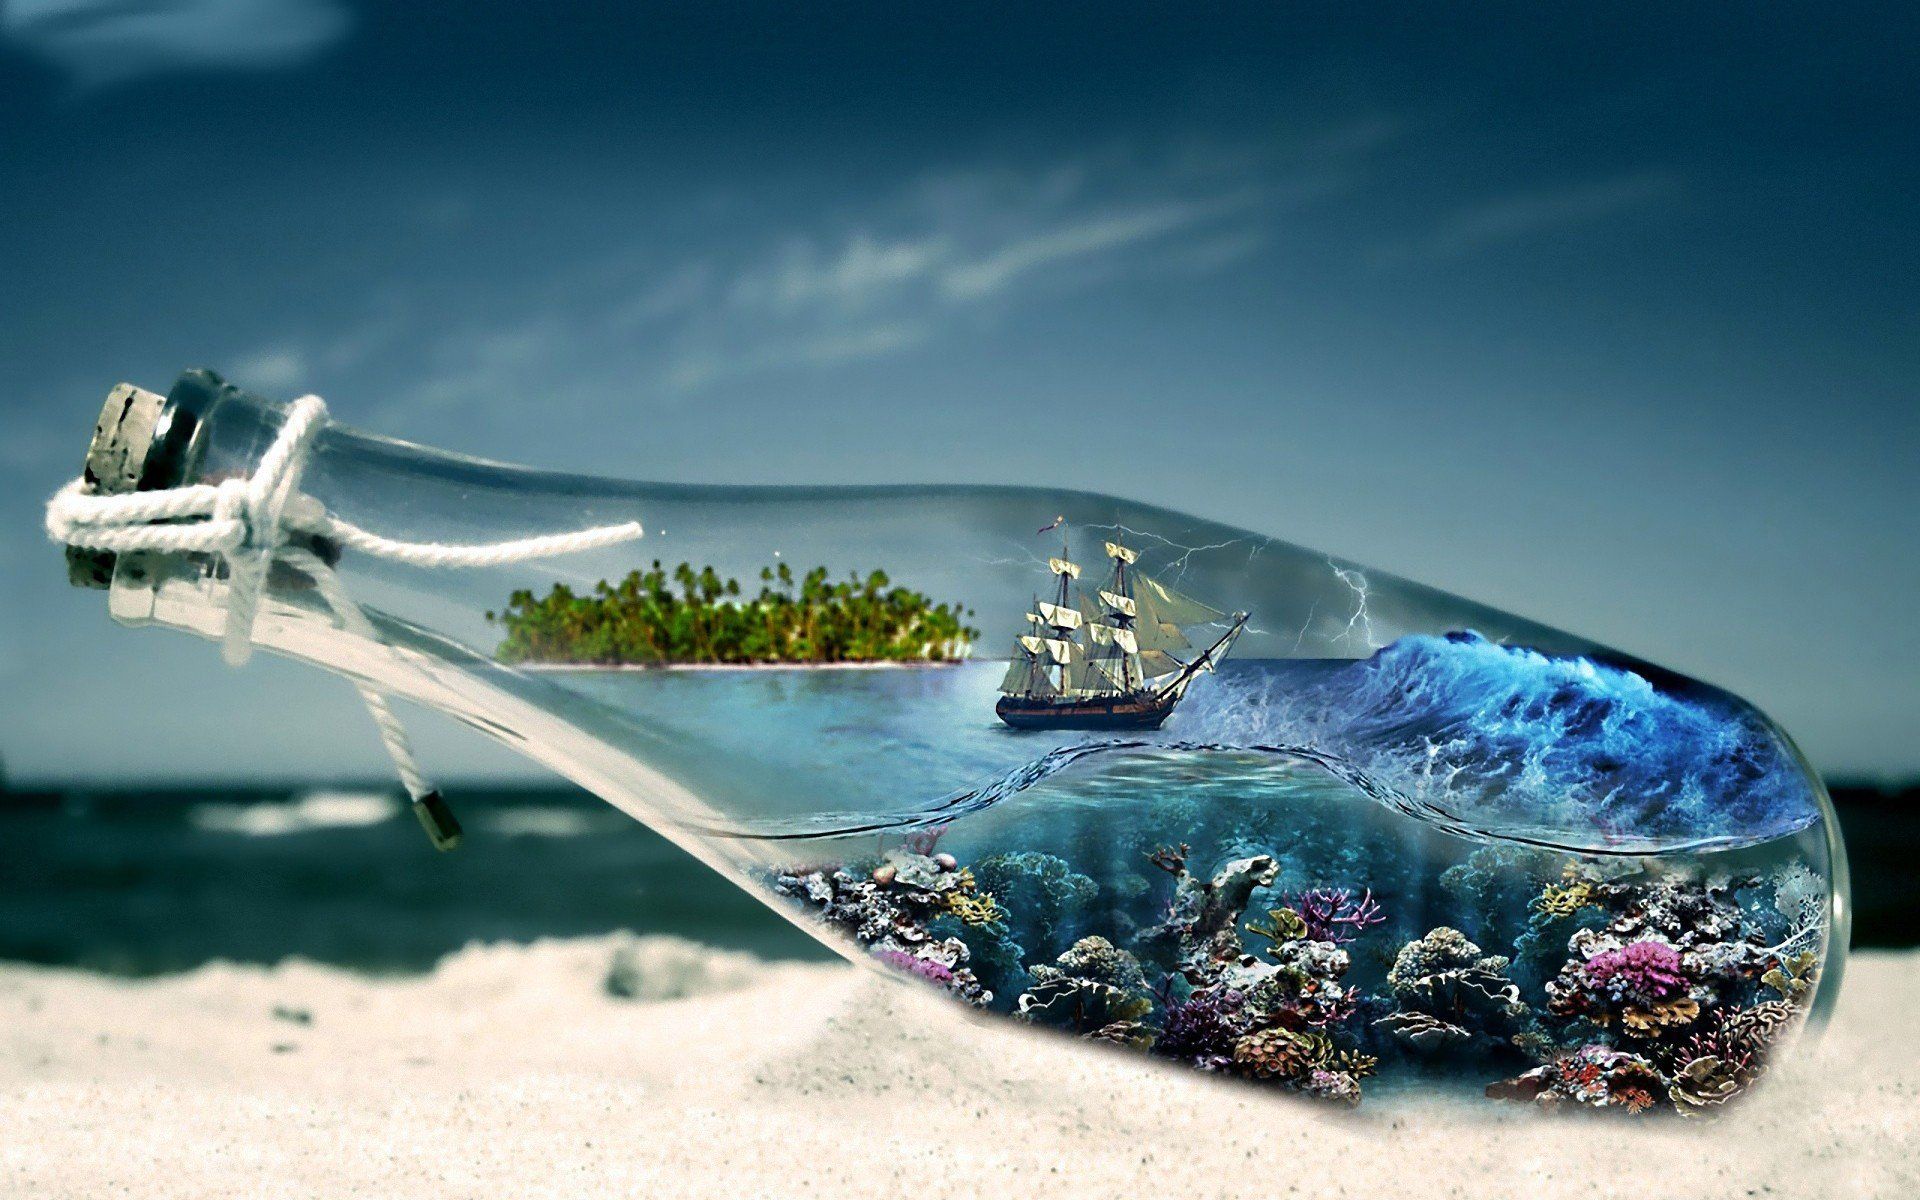 Barco en botella de cristal - Portadas para Facebook | Portadas para ...